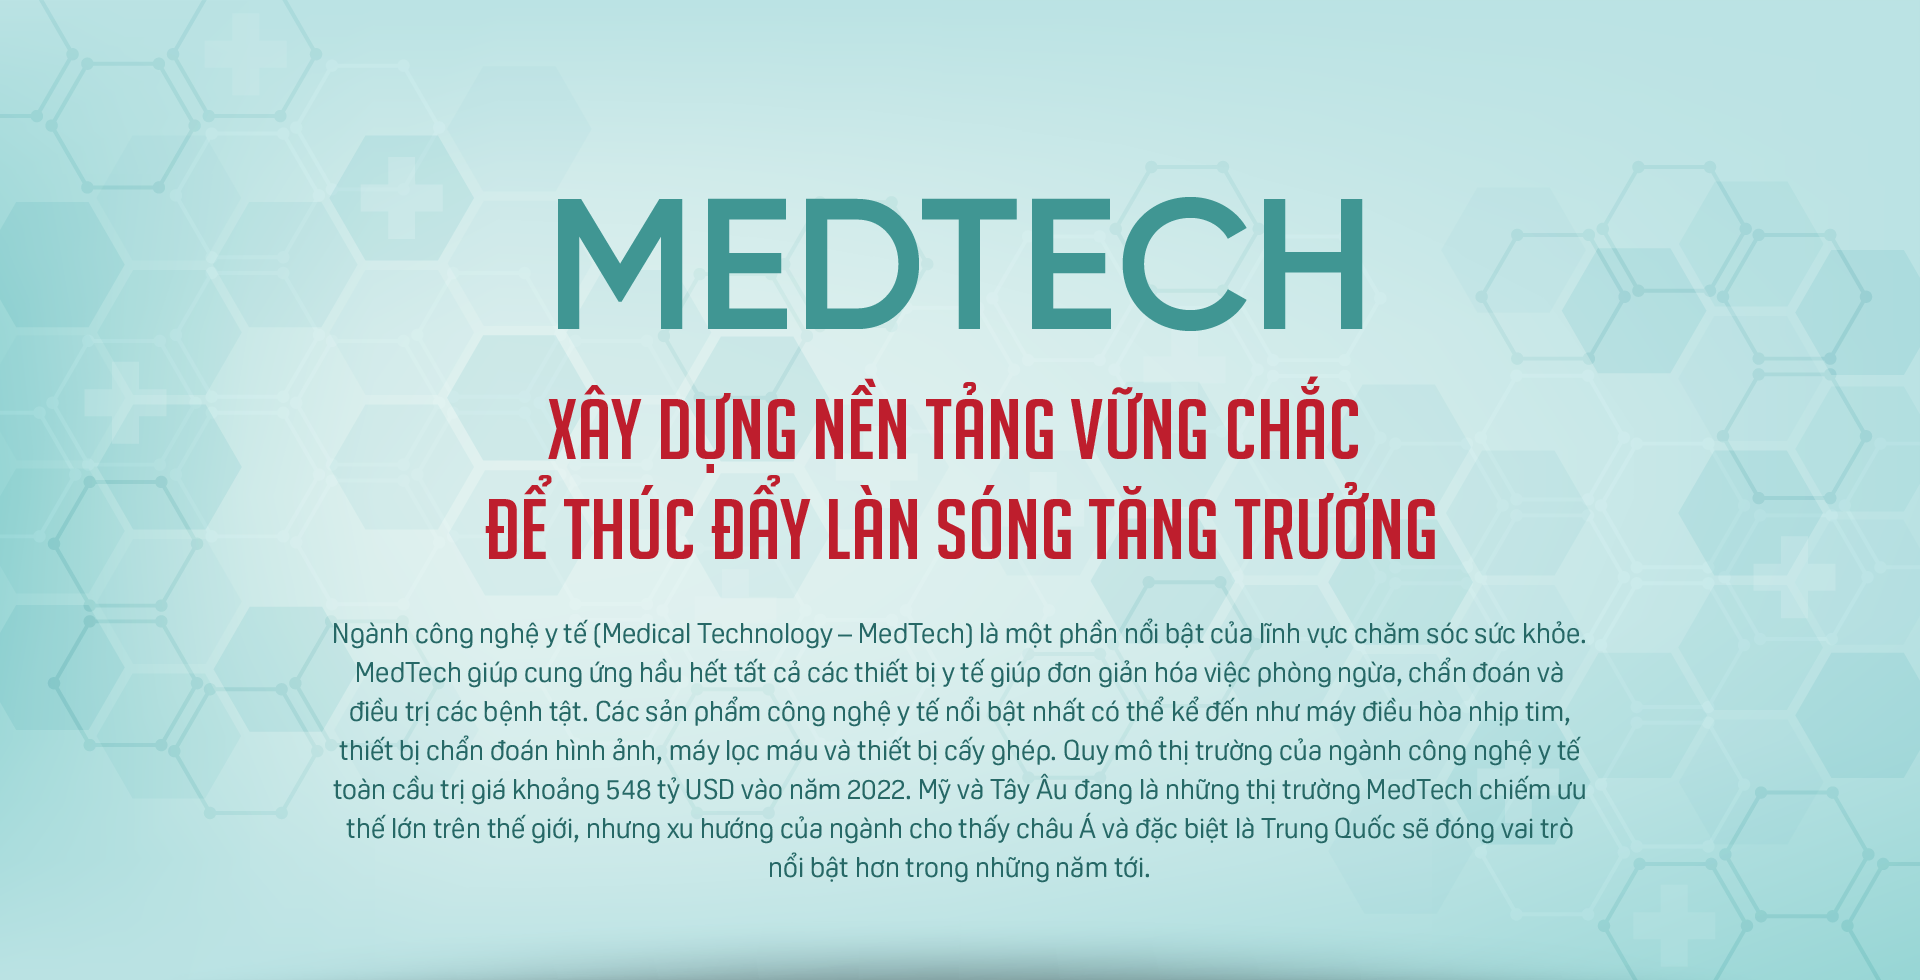 MedTech - Xây dựng nền tảng vững chắc để thúc đẩy làn sóng tăng trưởng - Ảnh 1